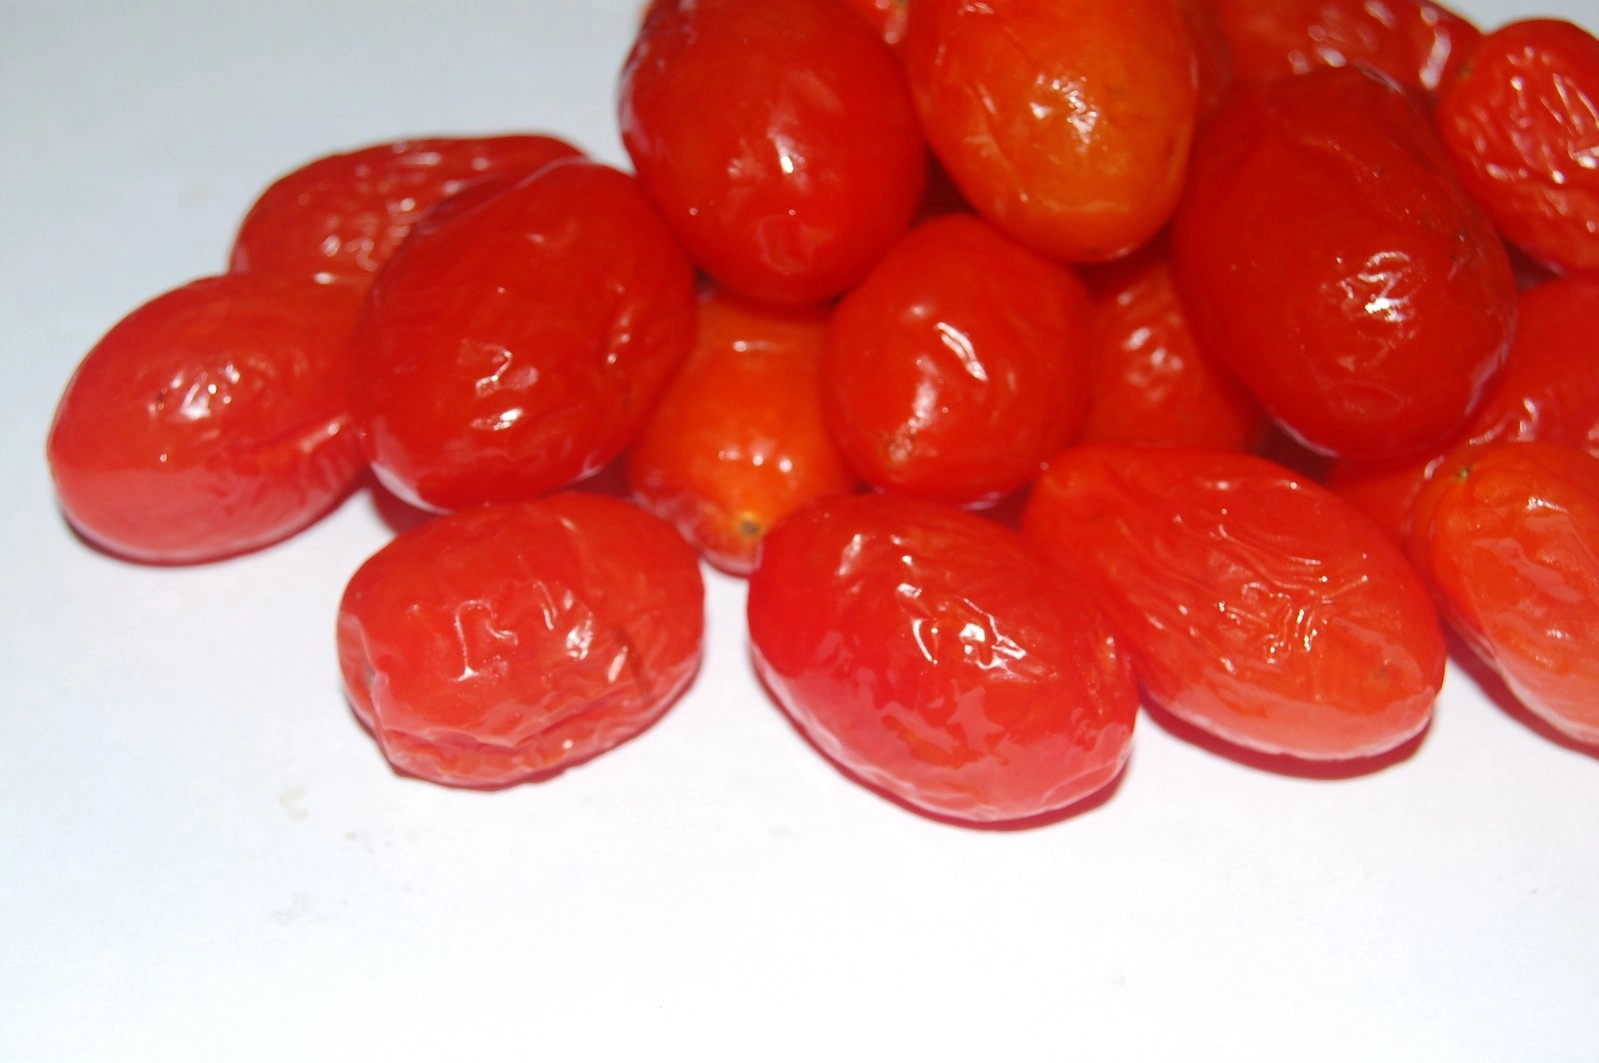 گوجه فرنگی انگور در نور است. عکس فاسد پوسیده